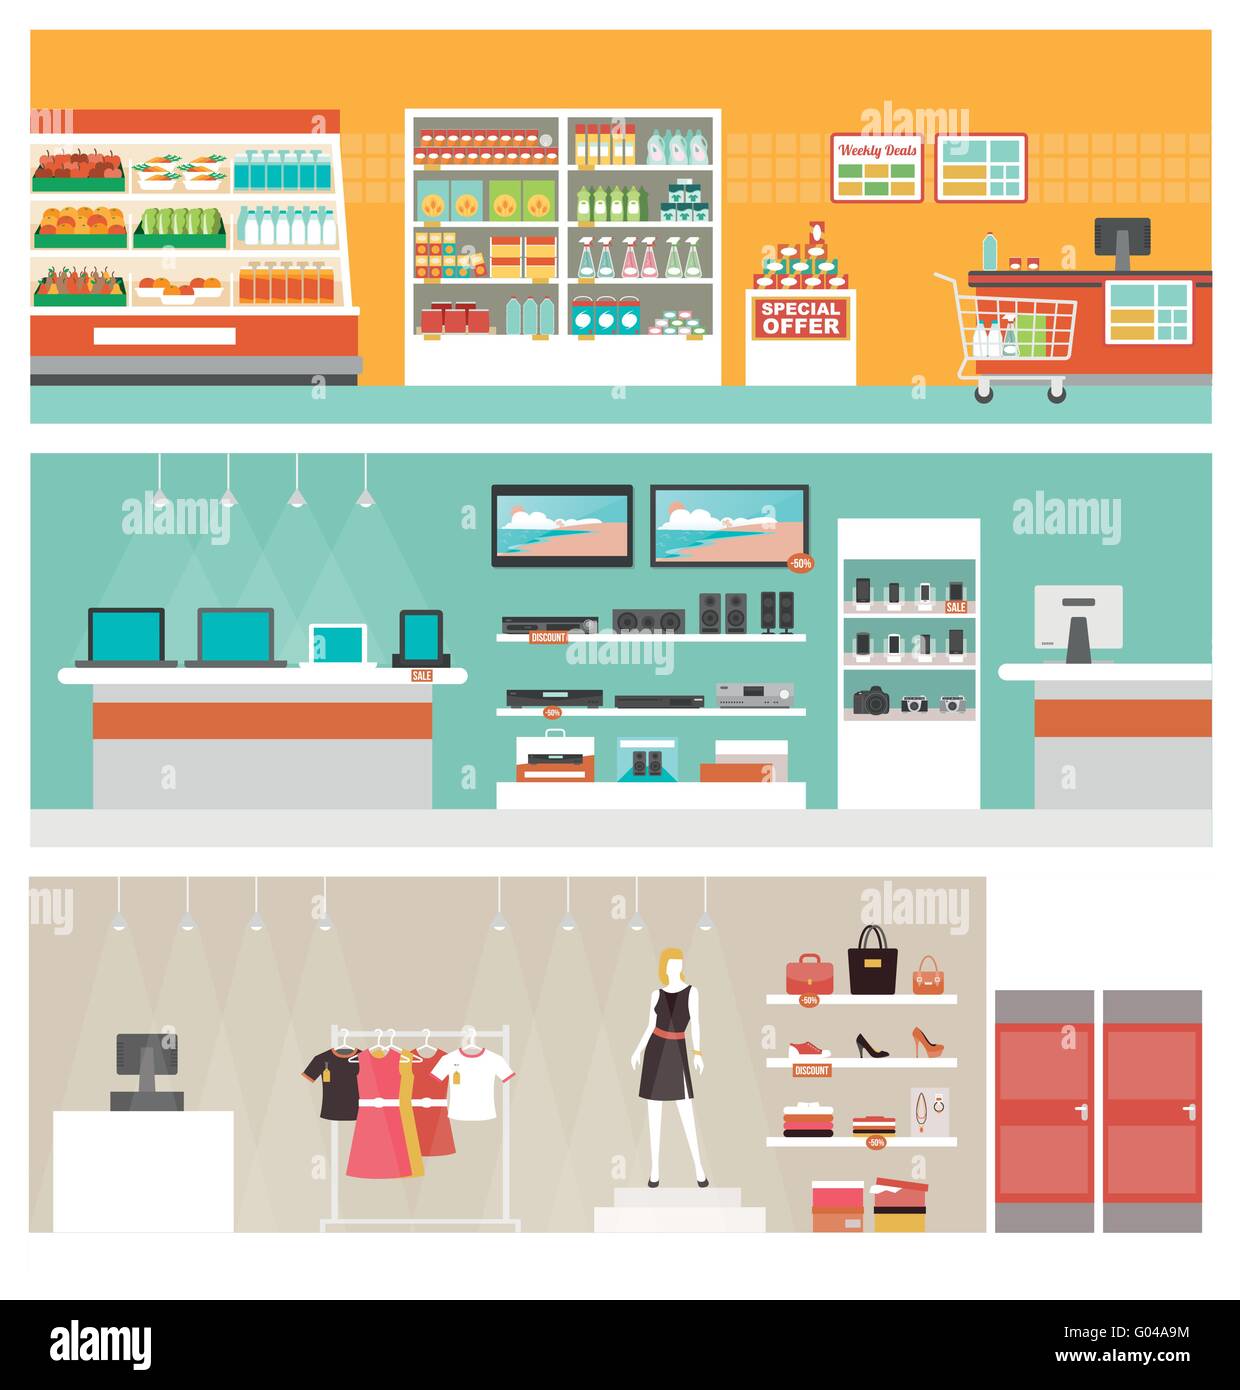 Supermarkt, Elektronik-Shop und Bekleidung Shop-Banner Satz, Einzelhandel und Gewerbe-Konzept Stock Vektor